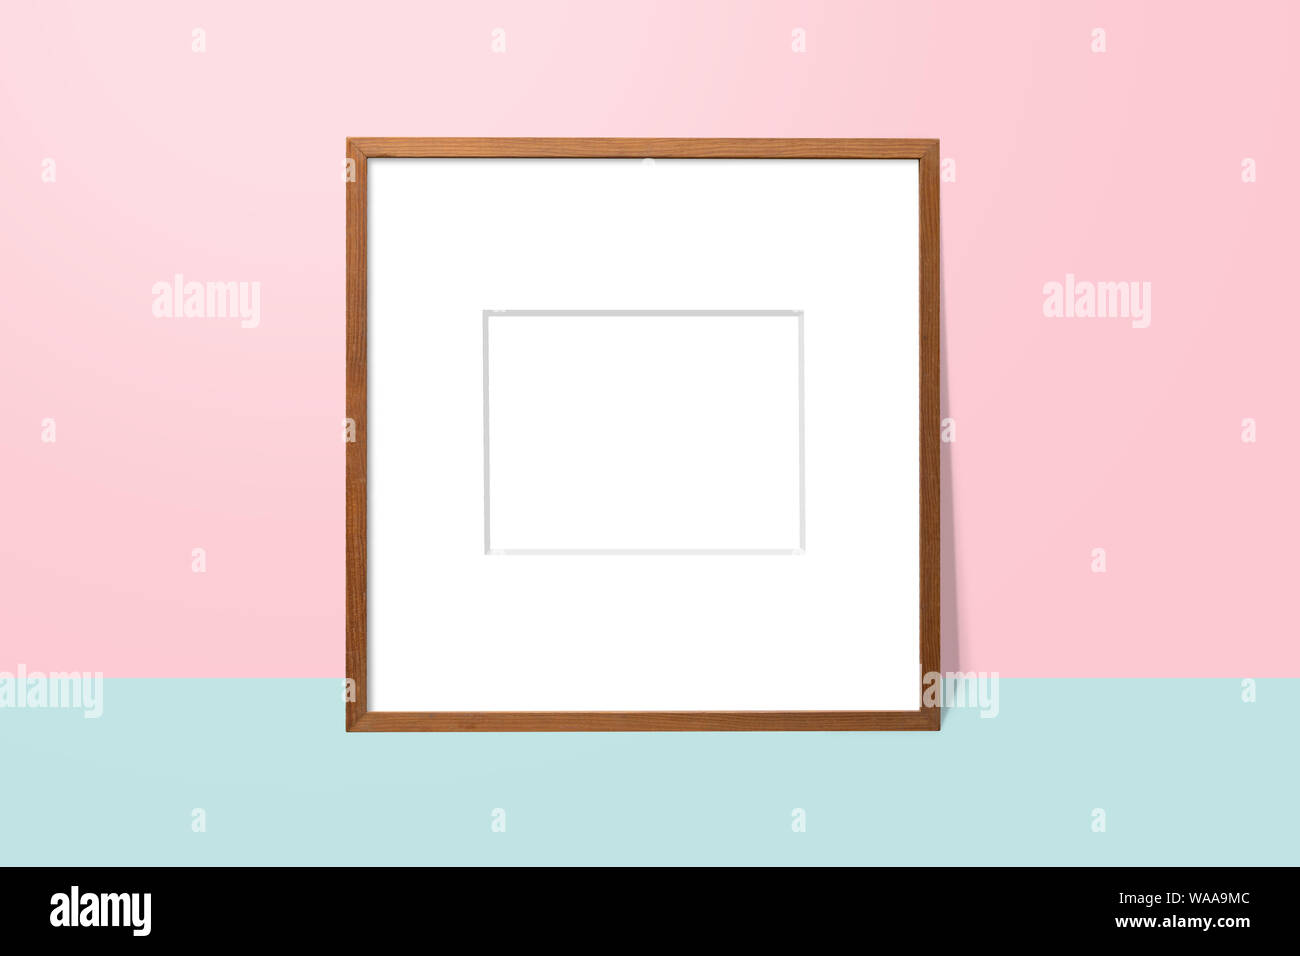 Espacio en blanco vacío de madera bastidor en blanco y rosa con inclinada contra la pared y el piso azul. un simple marco de fotos en blanco para su presentación o decorar backgroun Foto de stock